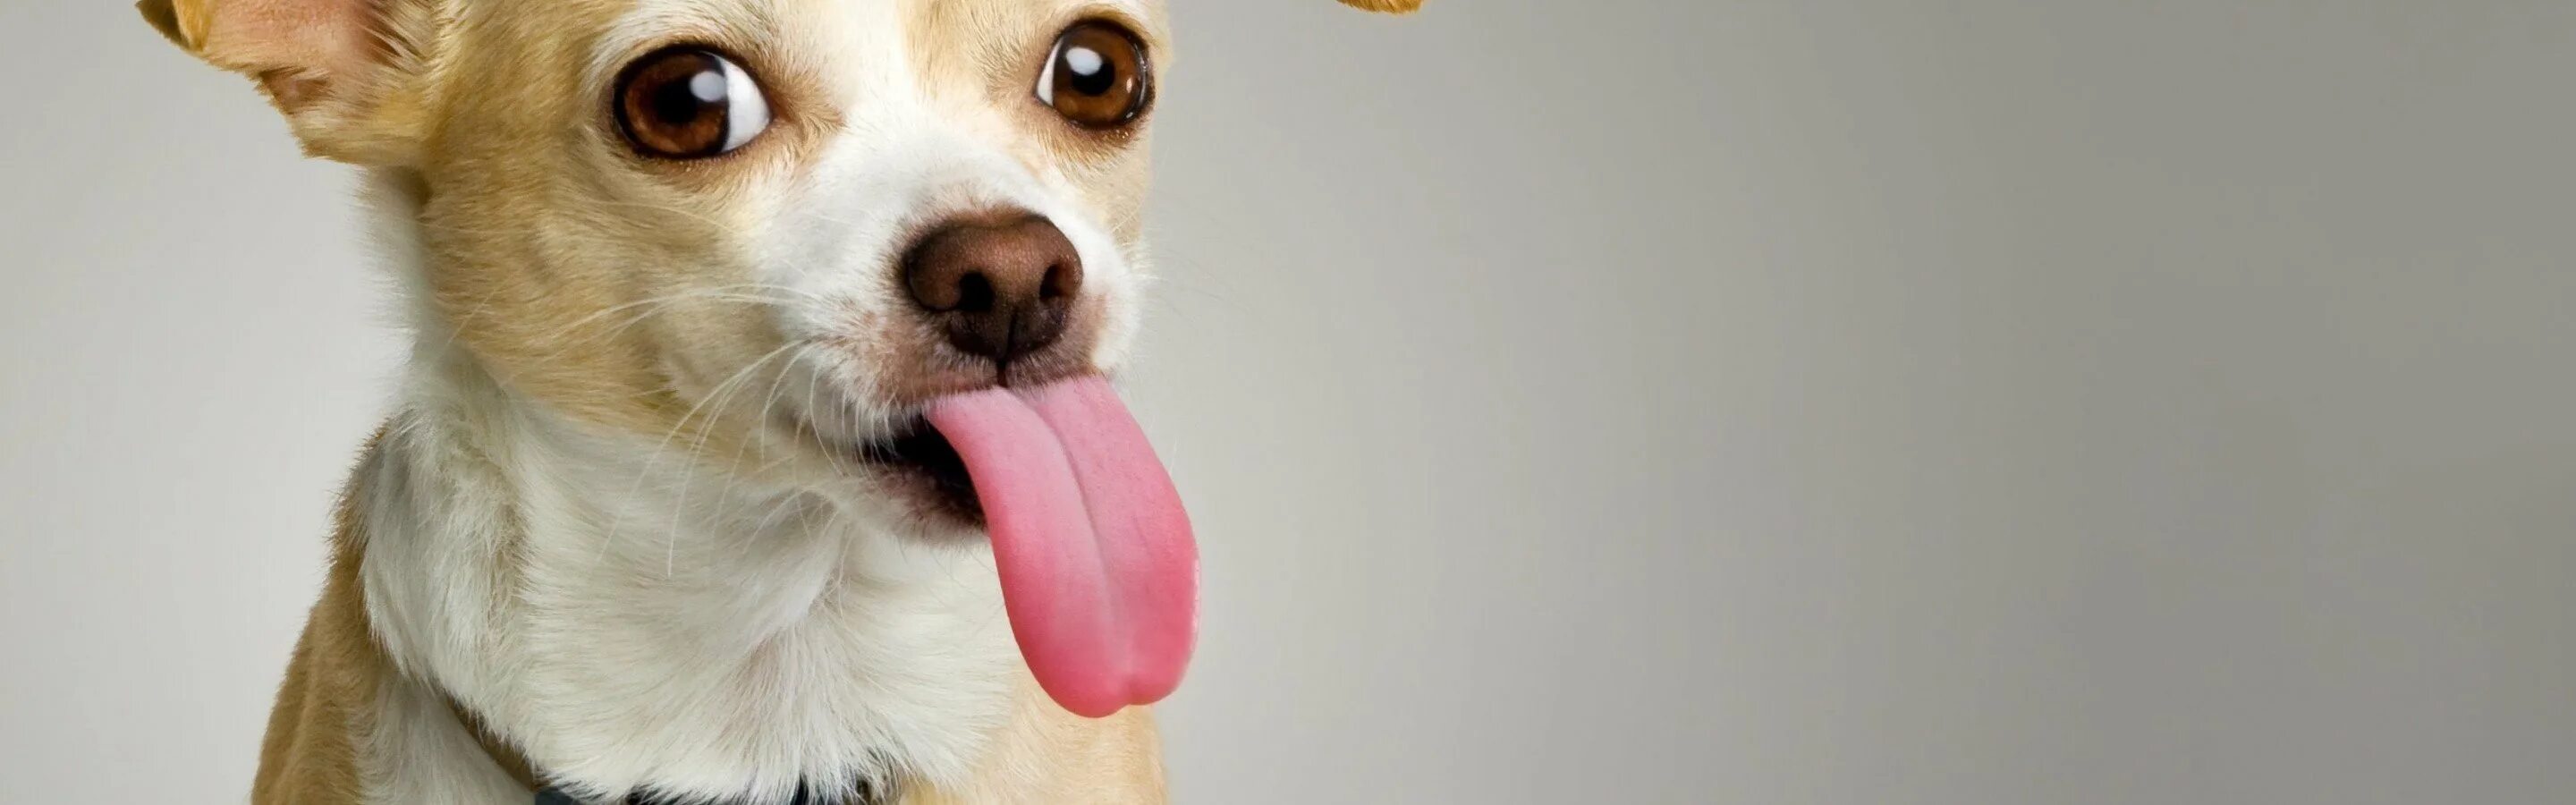 Собака с высунутым языком. Смешные собаки. Фото собаки с высунутым языком. Смешная собака на белом фоне. Свесив набок длинный розовый язык